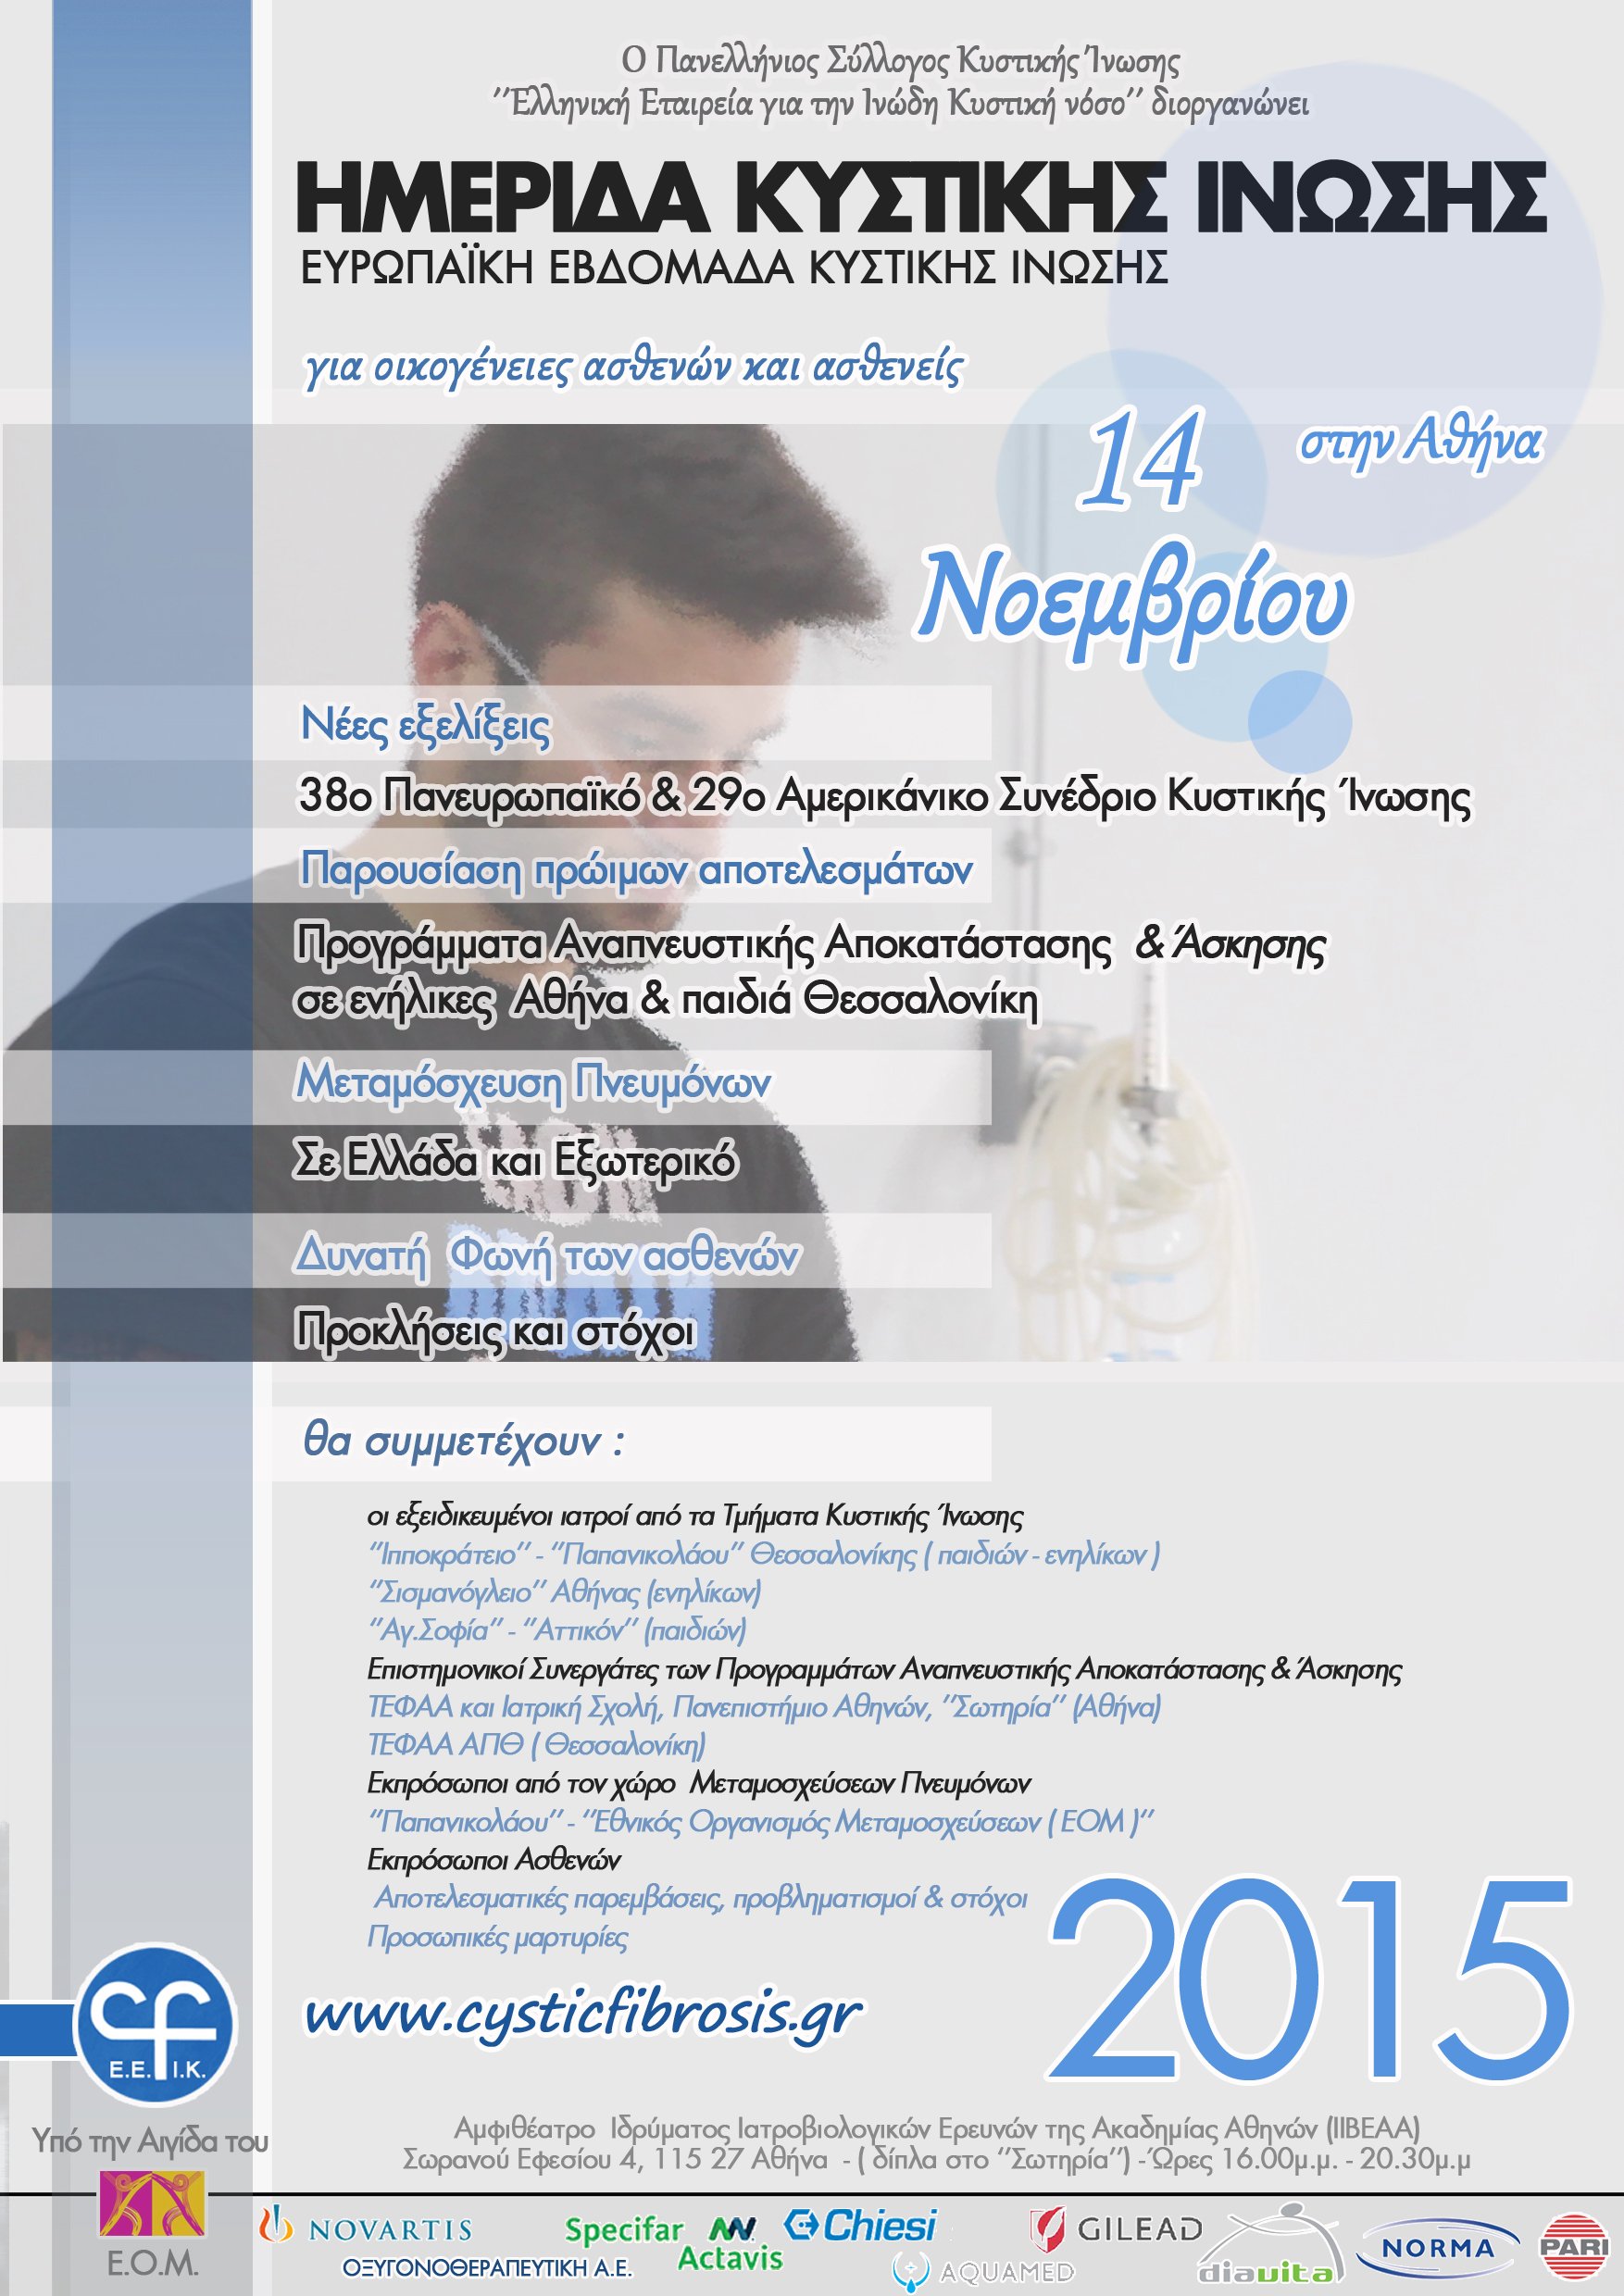 Ευρωπαϊκή Εβδομάδα Κυστικής Ίνωσης  16-22 Νοεμβρίου 2015